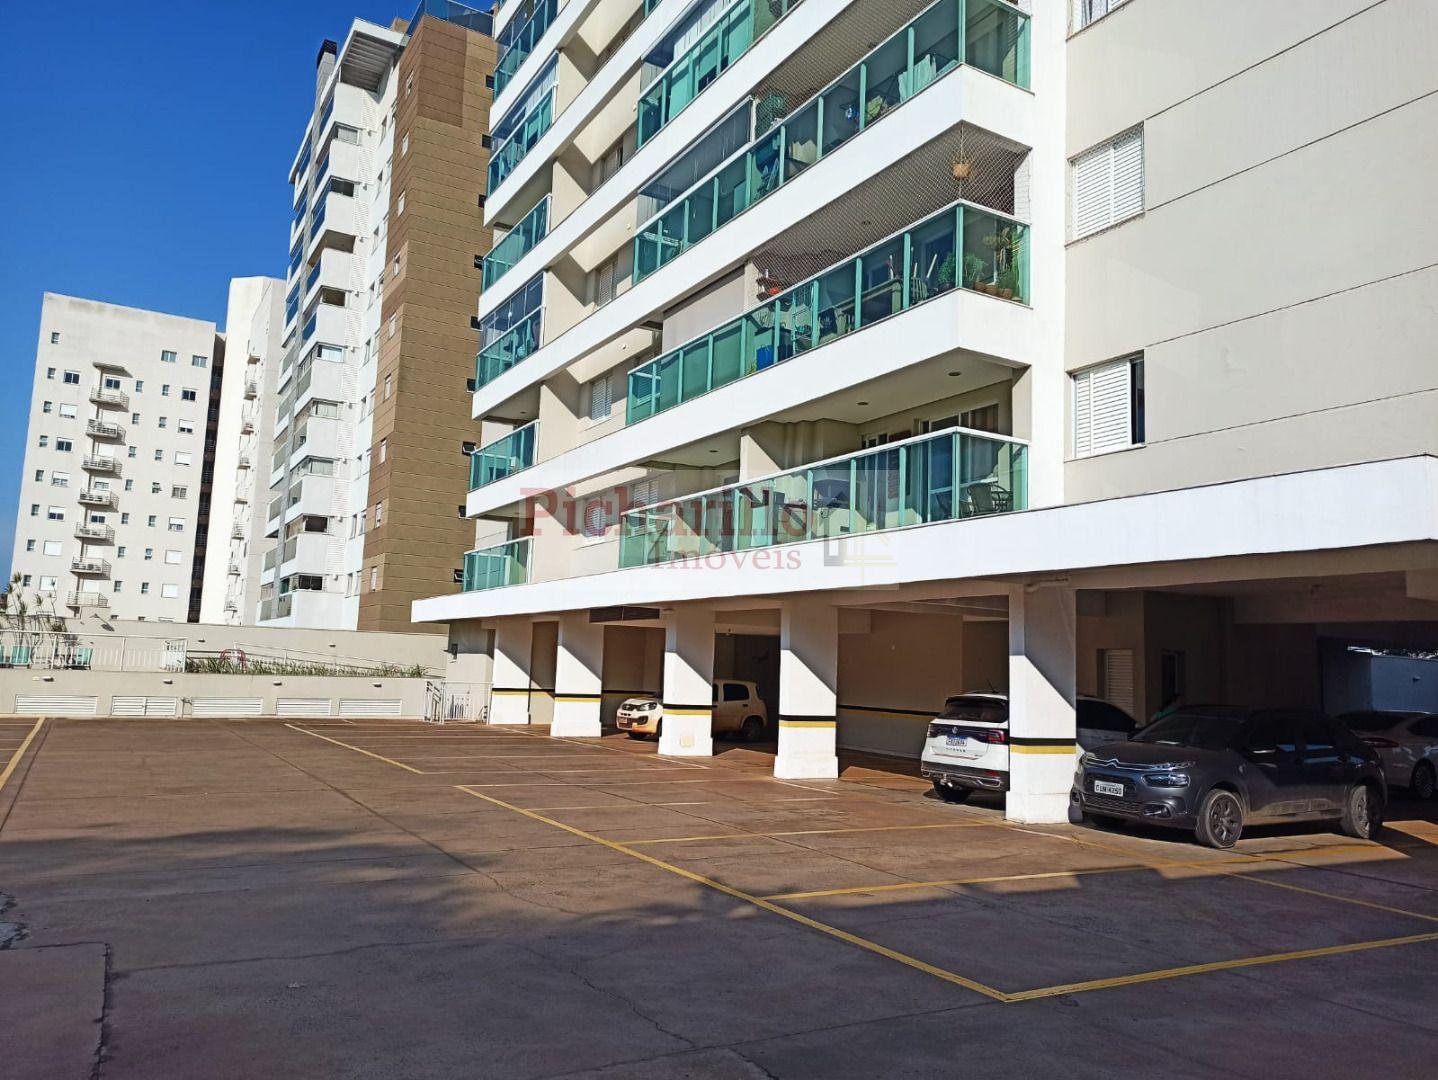 Apartamento com 3 dormitórios (1 suíte) à venda, 73 m² - Parque Faber - São Carlos/SP